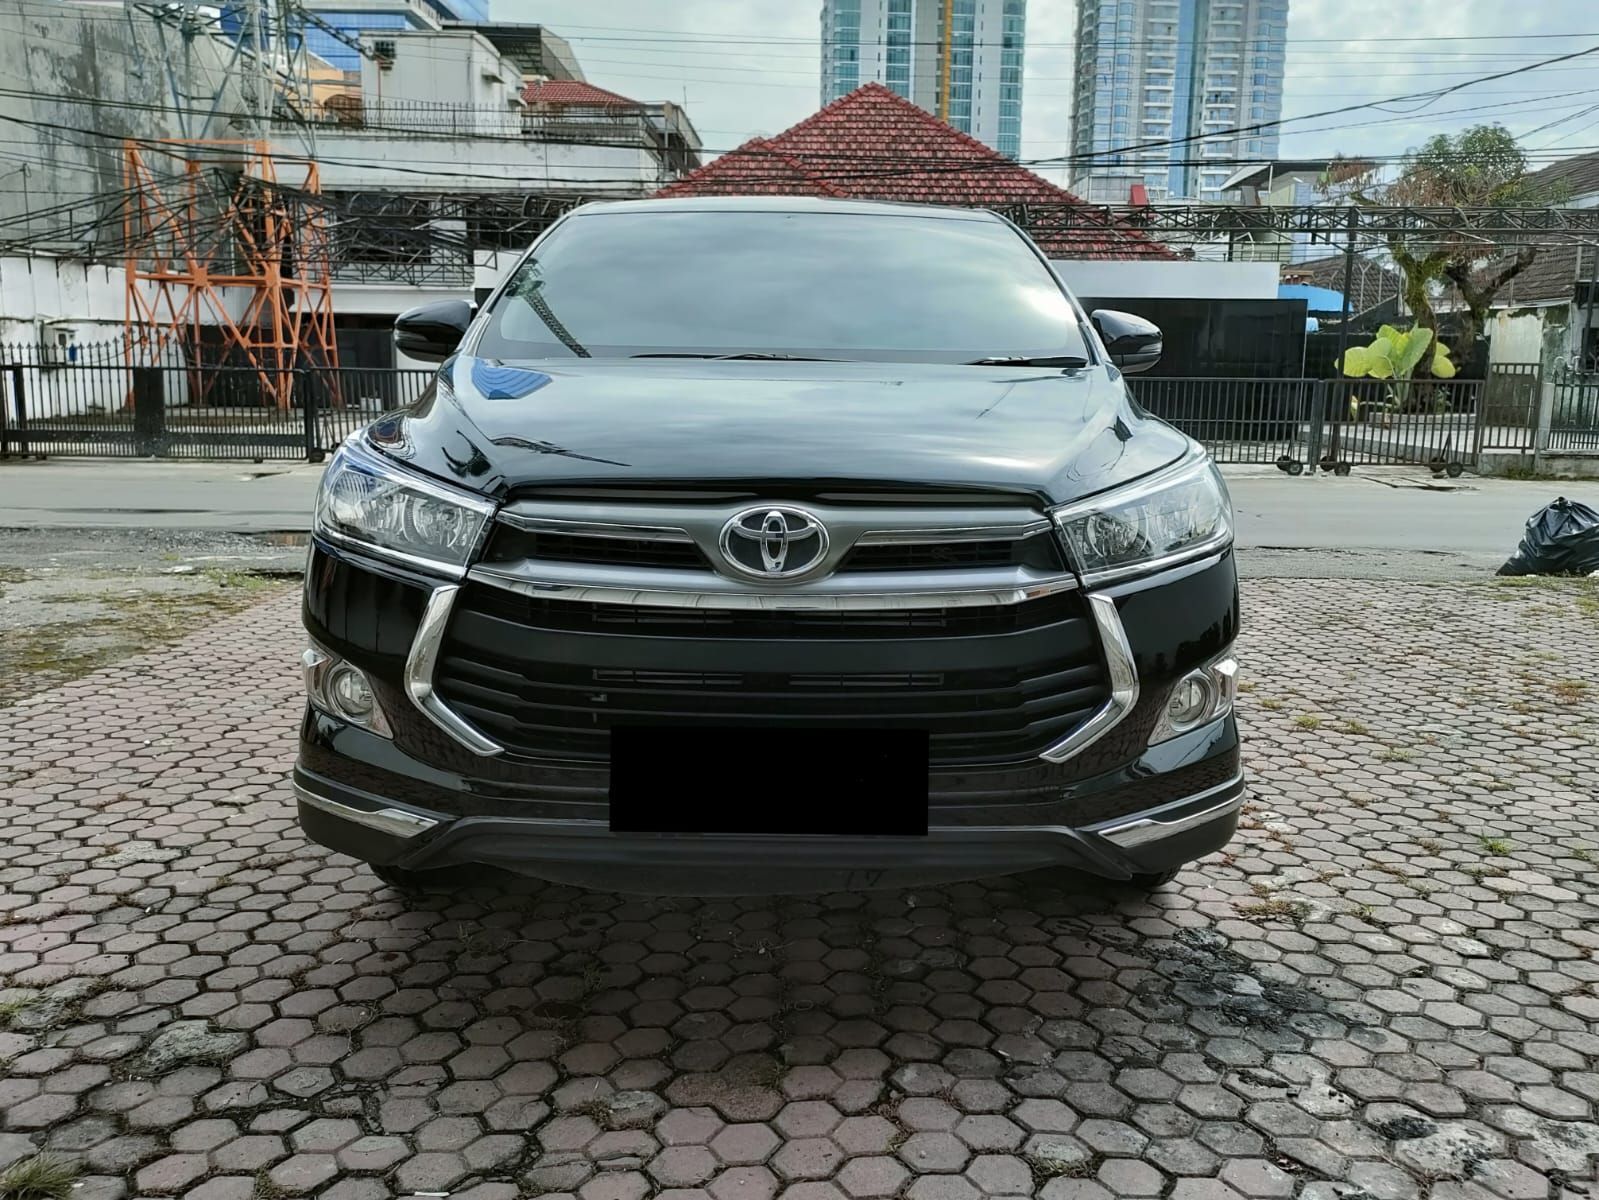 2020 Toyota Kijang Innova REBORN 2.4 G AT DIESEL REBORN 2.4 G AT DIESEL bekas